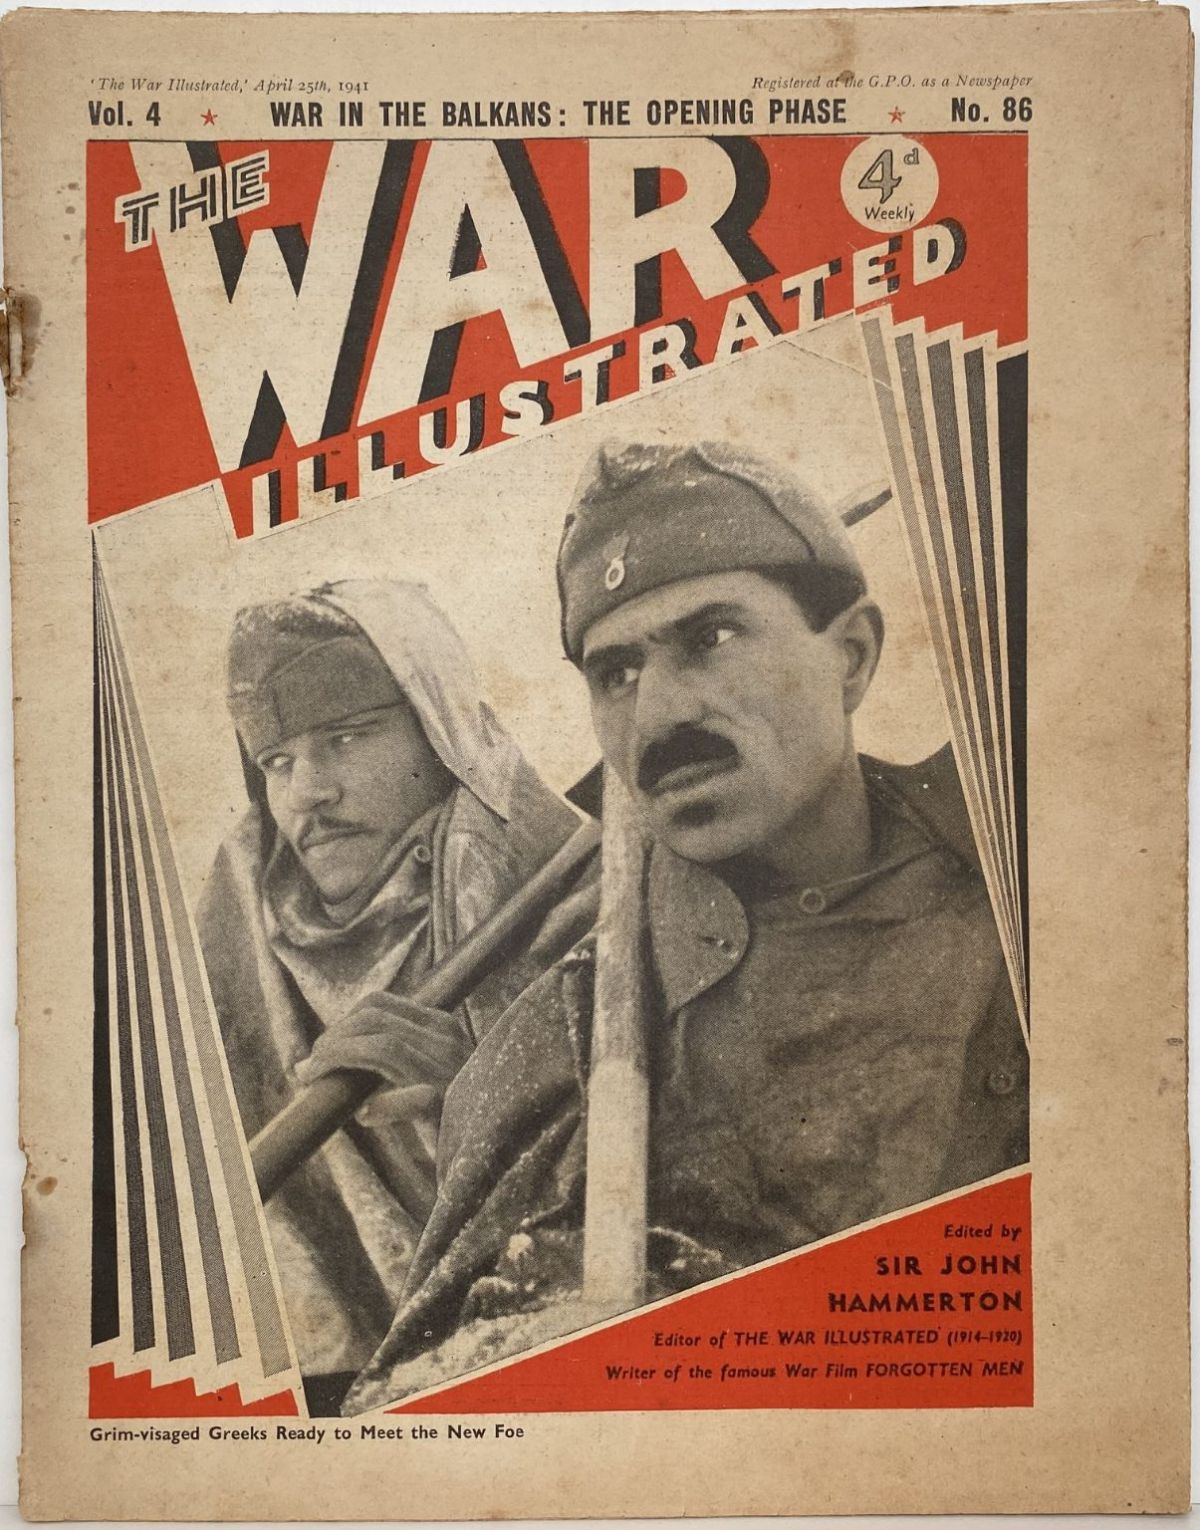 THE WAR ILLUSTRATED - Vol 4, No 86, 25th April 1941